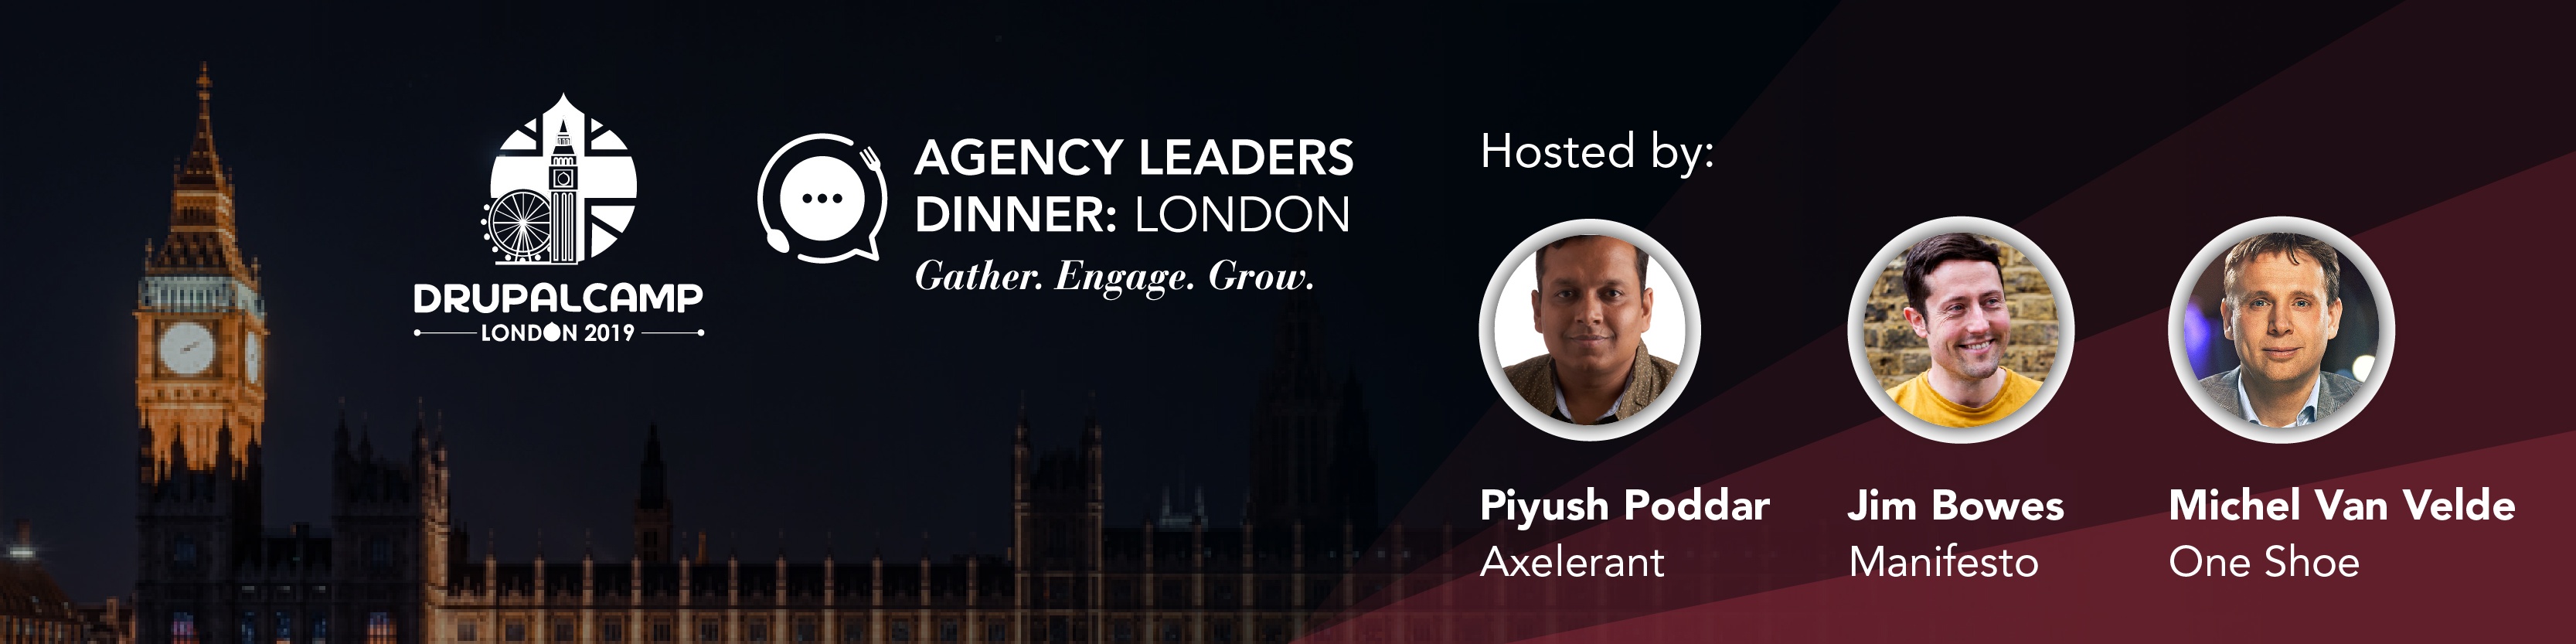 agency-leaders-dinner-london-2019